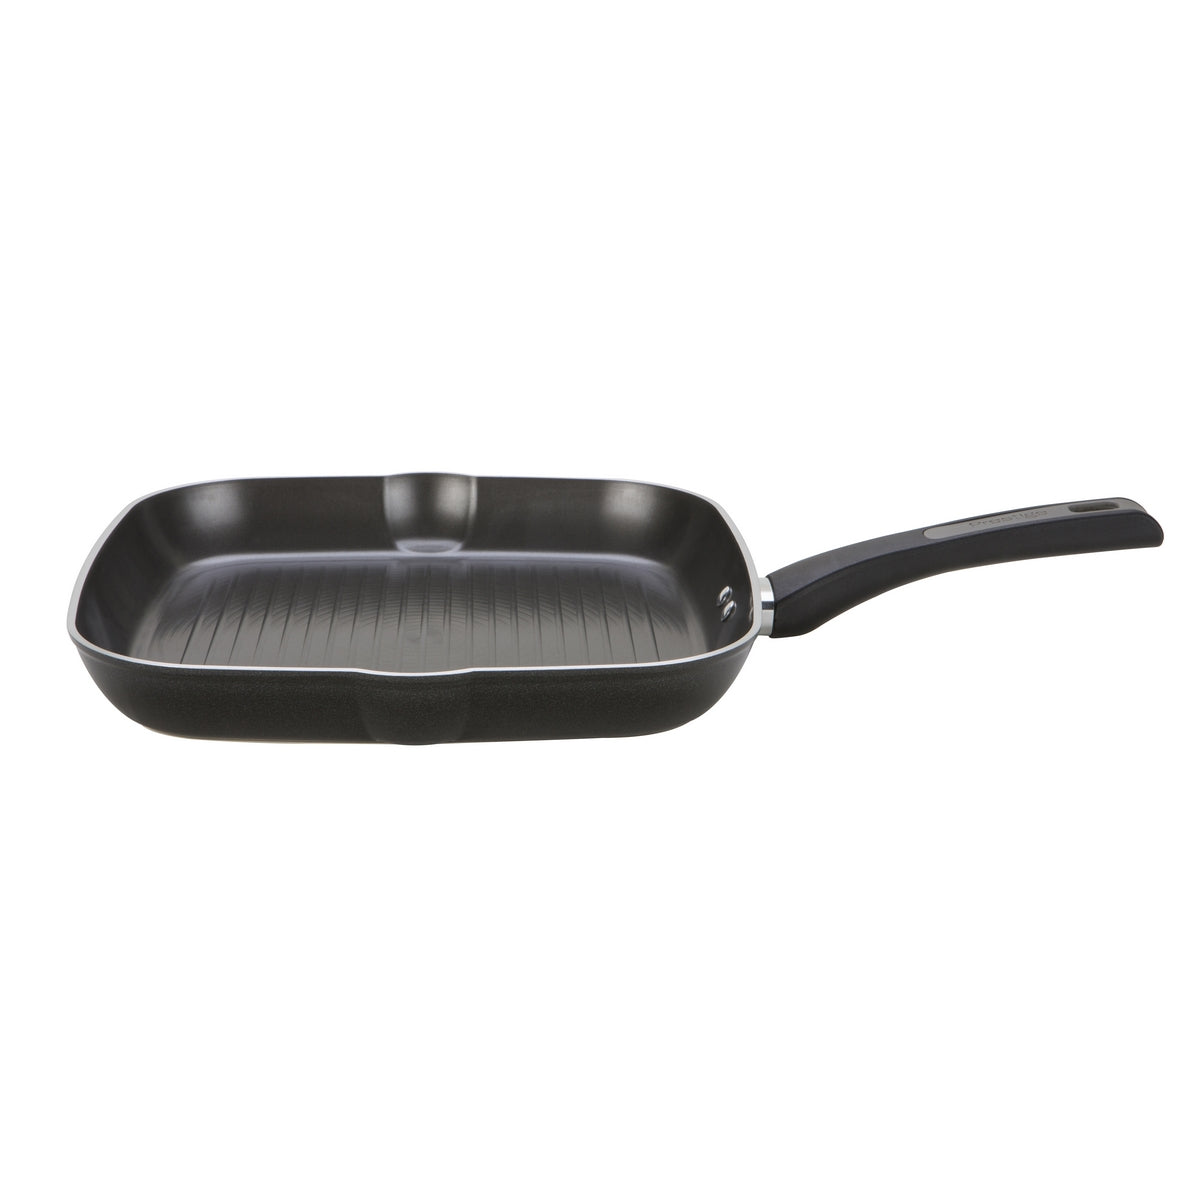 Prestige Dura Forge Non-Stick 28cm Square Grill Pan